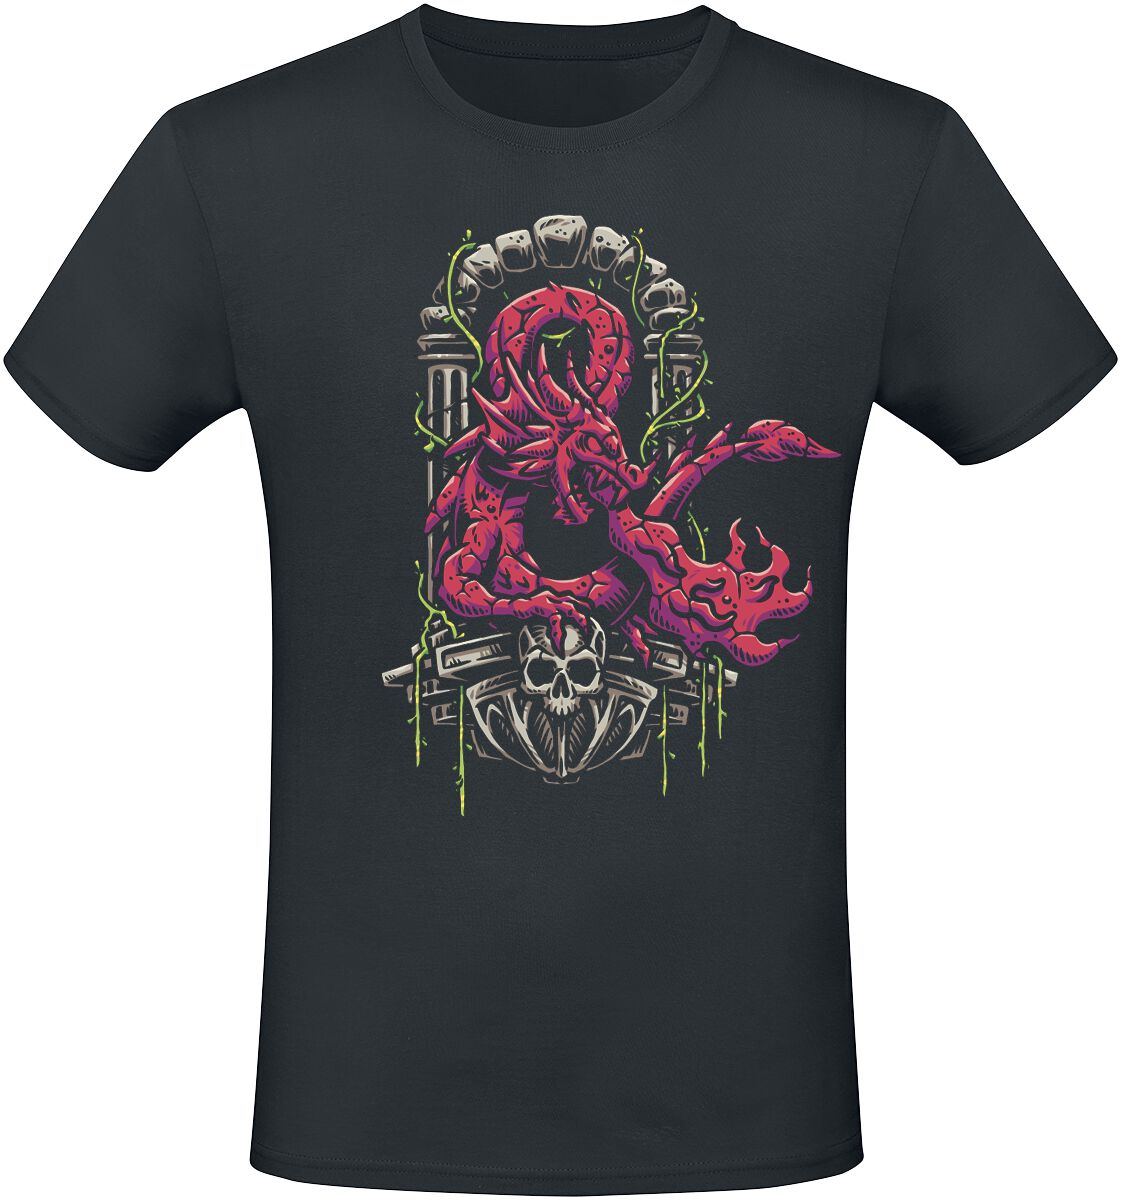 Dungeons and Dragons - Gaming T-Shirt - Ampersand Dragon - S bis XXL - für Männer - Größe XXL - schwarz  - EMP exklusives Merchandise!